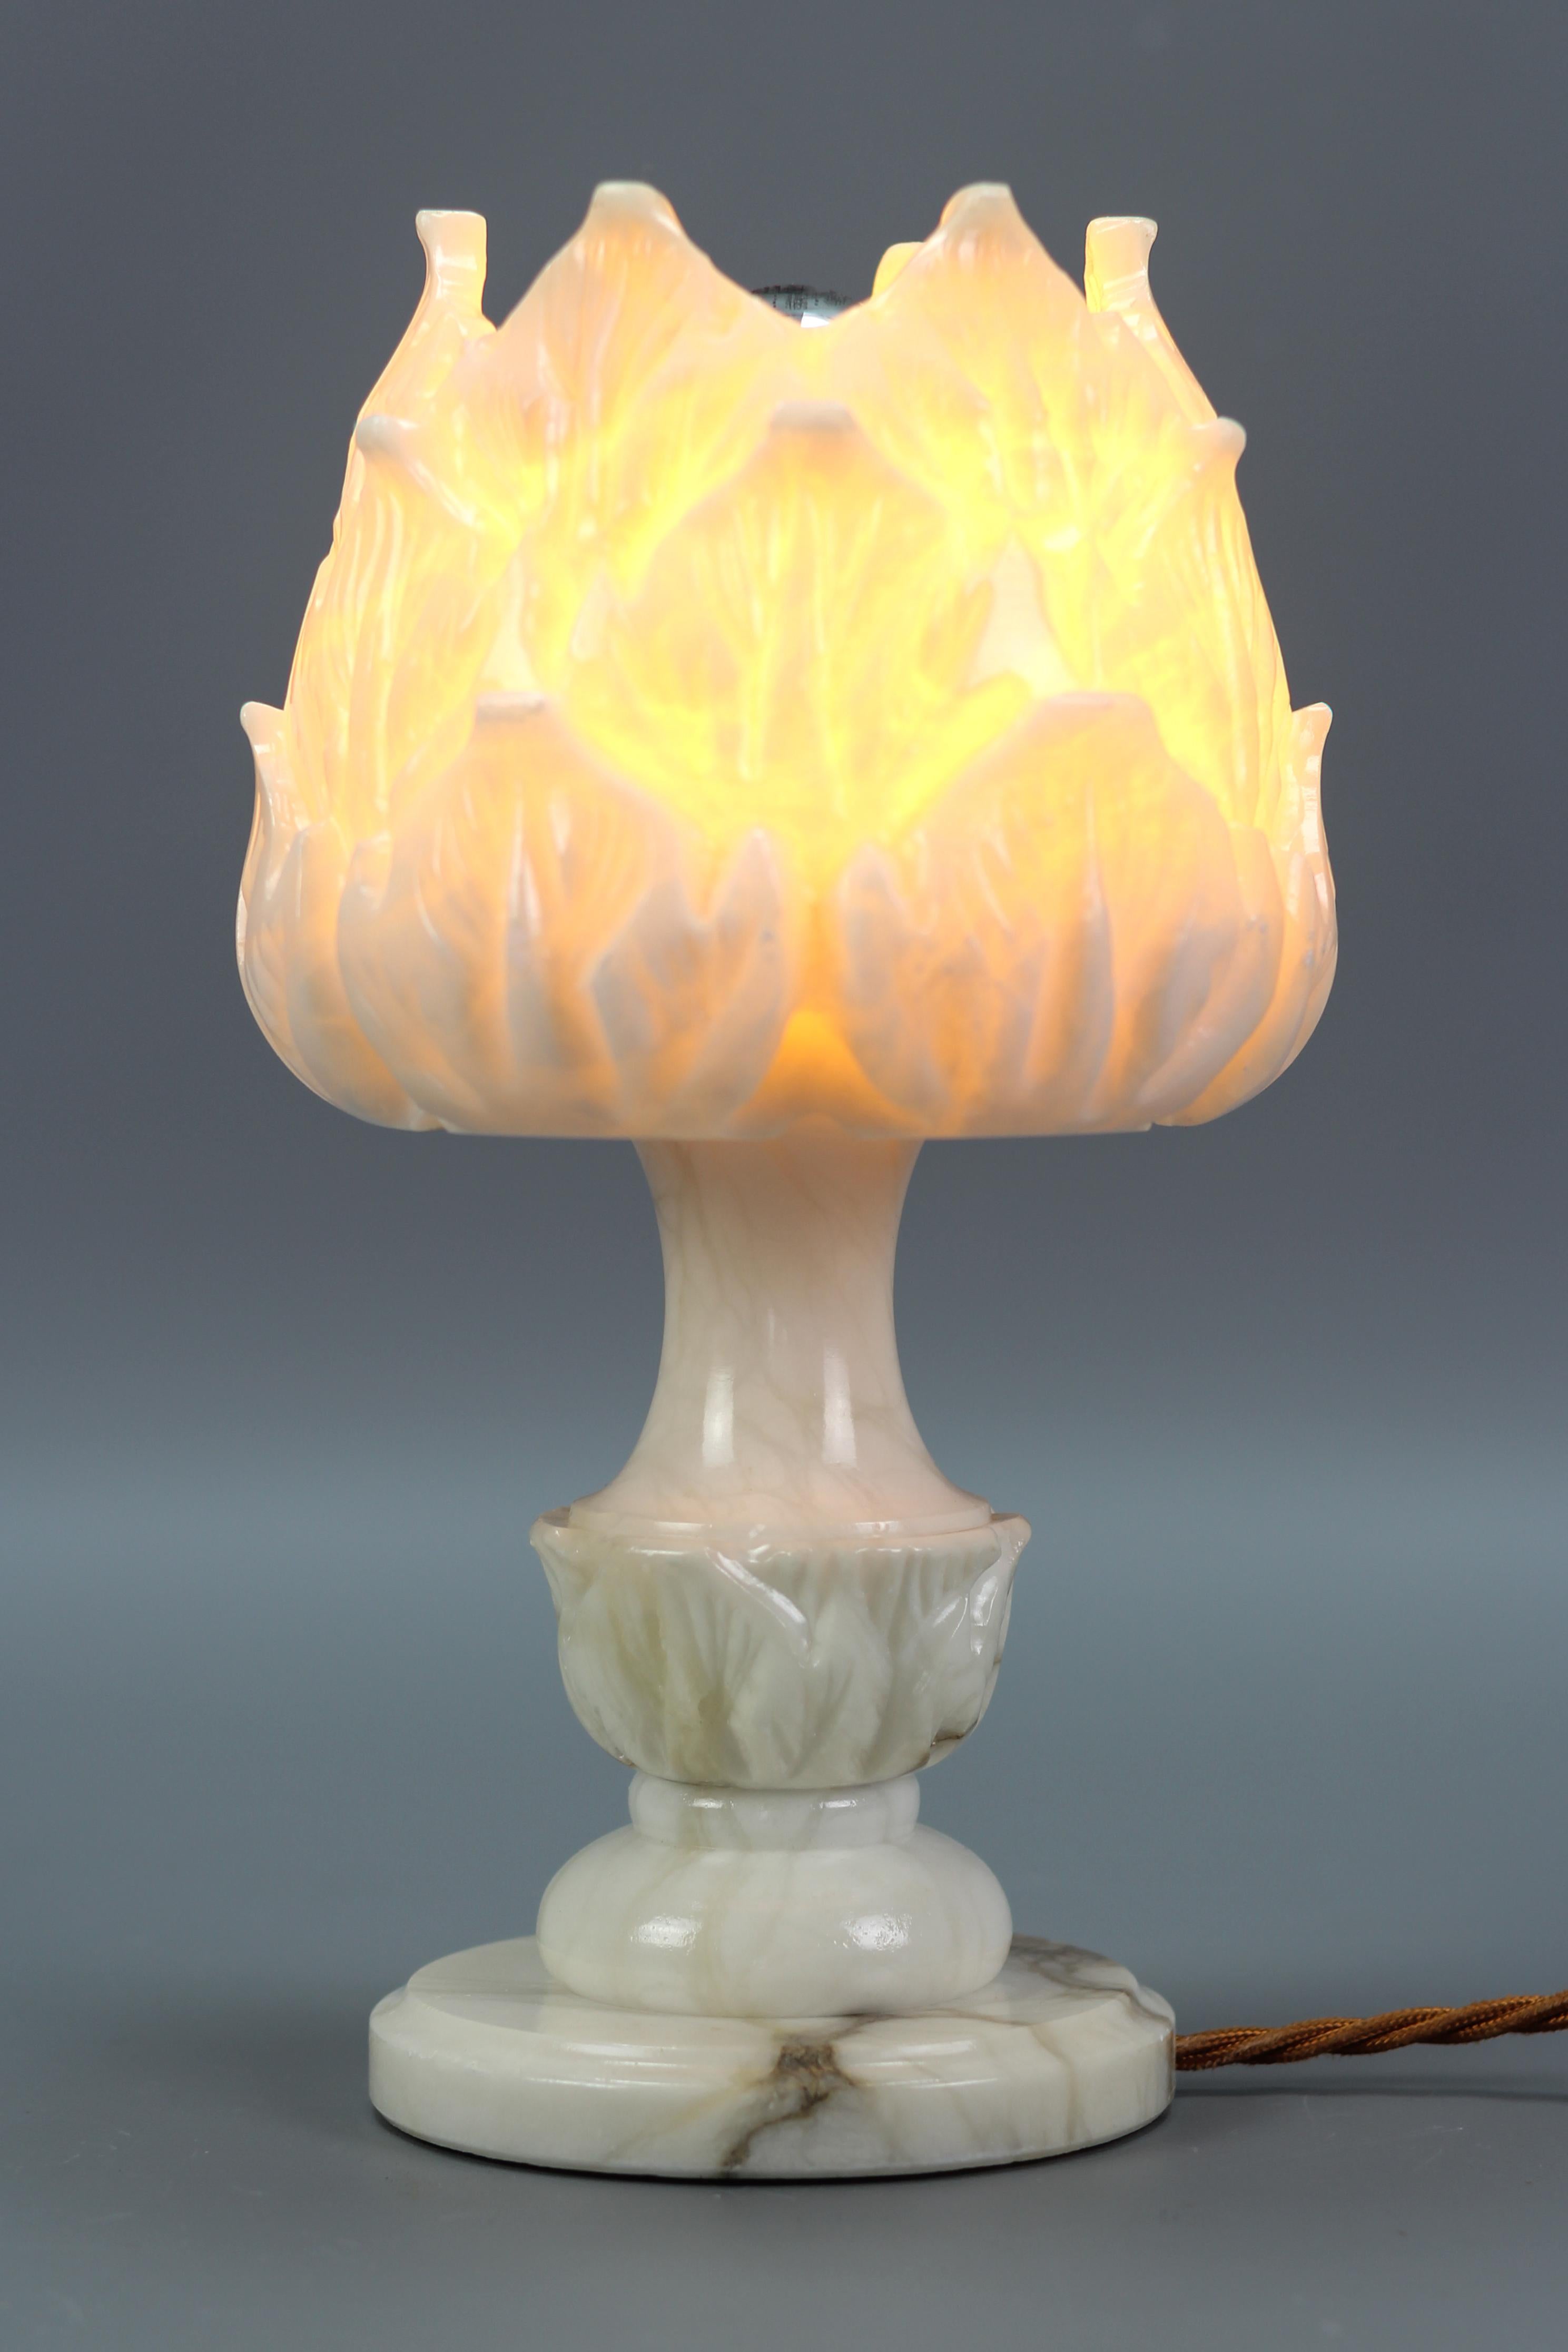 Lampe de table ou lampe d'ambiance italienne du milieu du siècle en albâtre blanc en forme de fleur, datant des années 1950.
Absolument adorable lampe de table ou lampe d'ambiance en albâtre de couleur blanc/ivoire en forme de fleur avec quelques